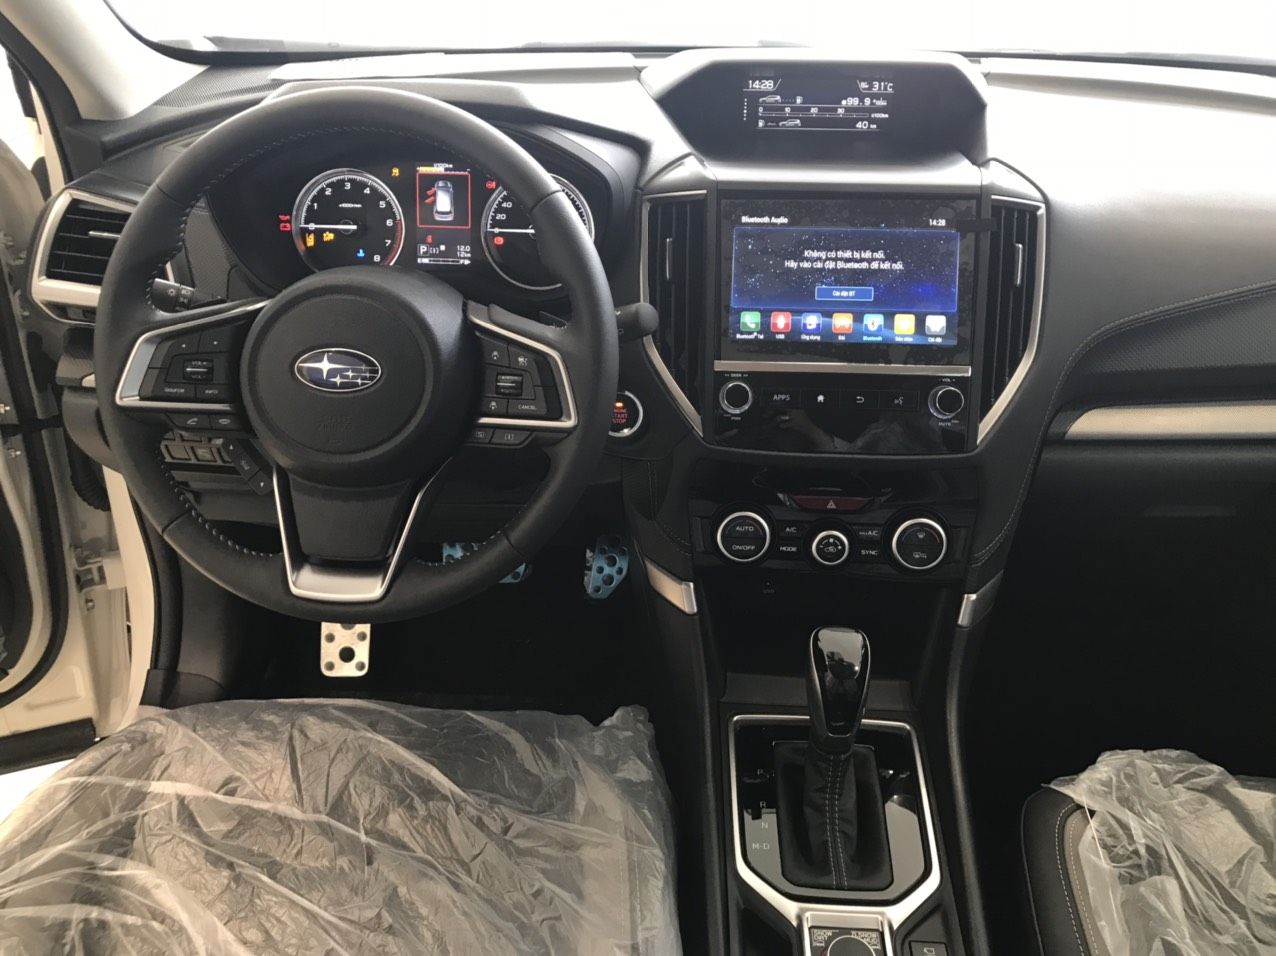 Subaru Forester 2021 - Subaru Đồng Nai - Chỉ 969 triệu sở hữu xe ngay - Ưu đãi khủng trong tháng 3